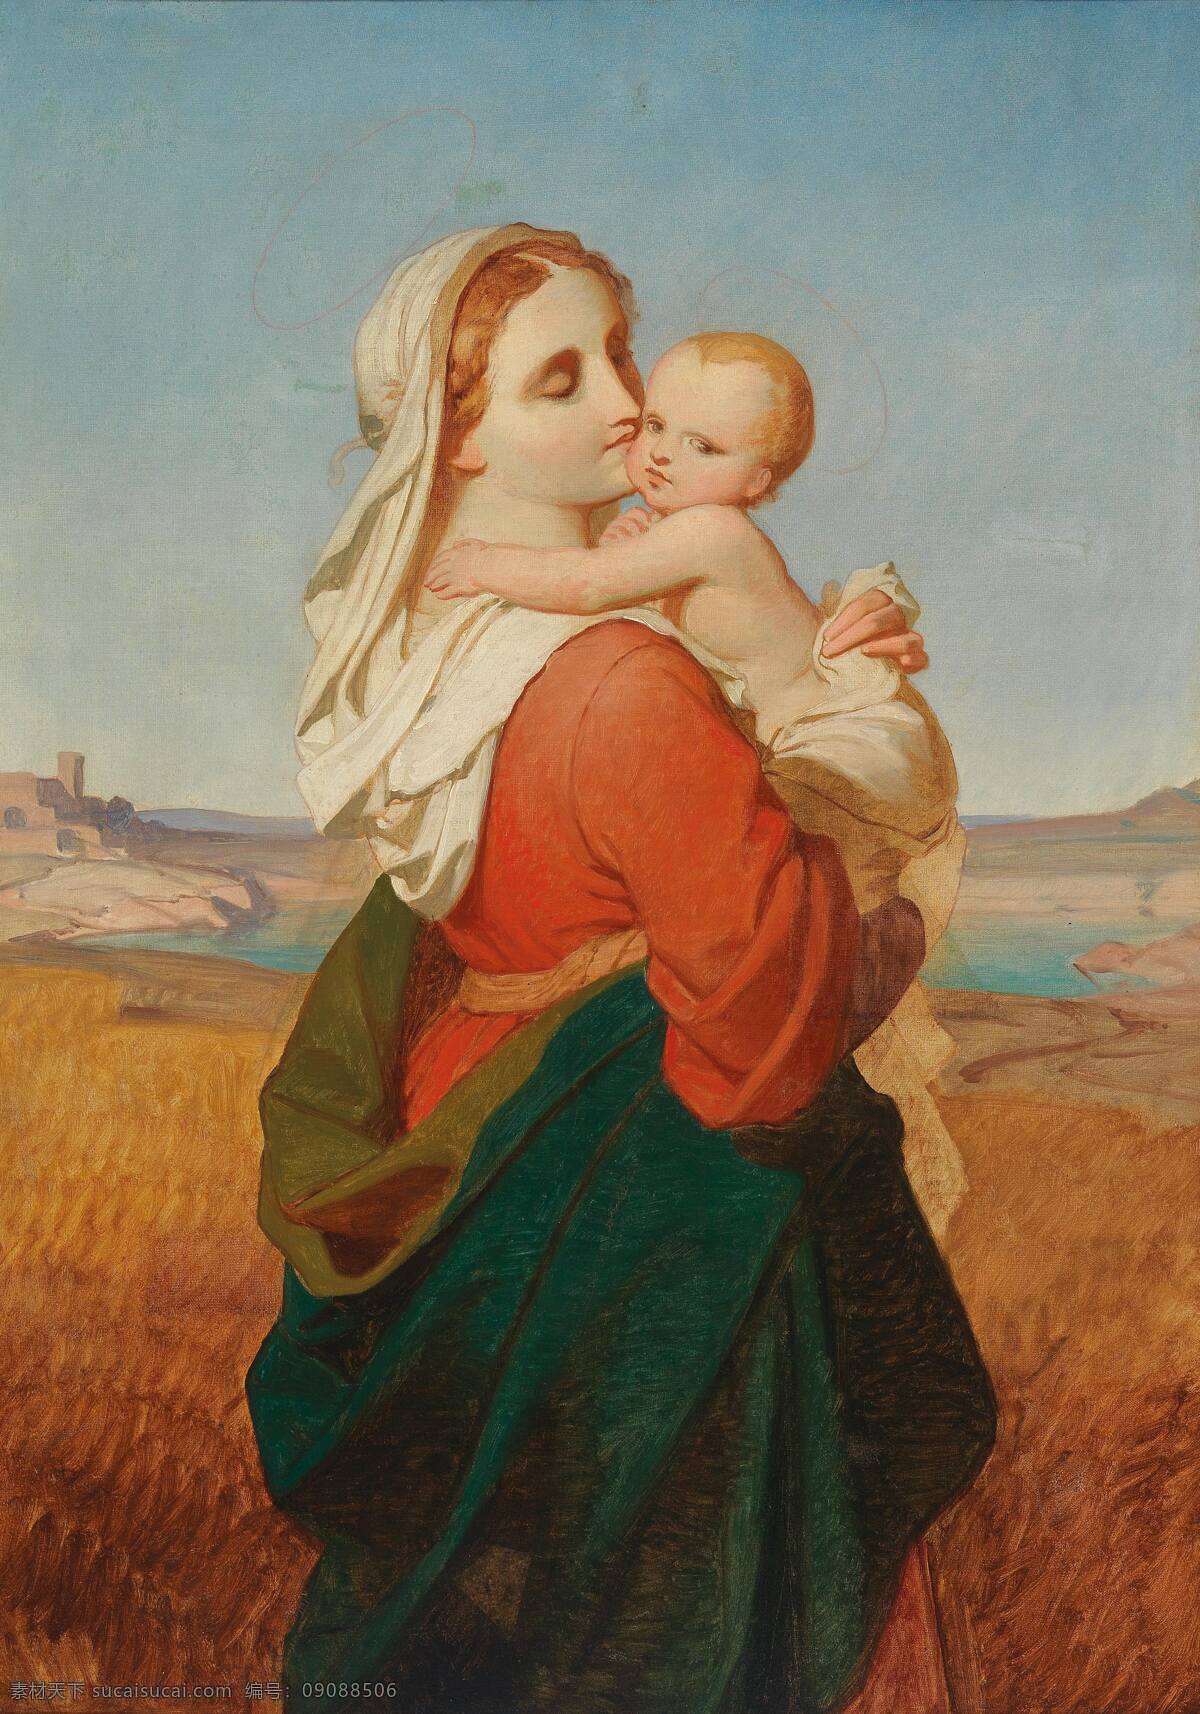 圣母与圣婴 圣经故事 圣玛丽娅 感应上天 灵气 涎育耶稣 宗教油画 19世纪油画 油画 文化艺术 绘画书法